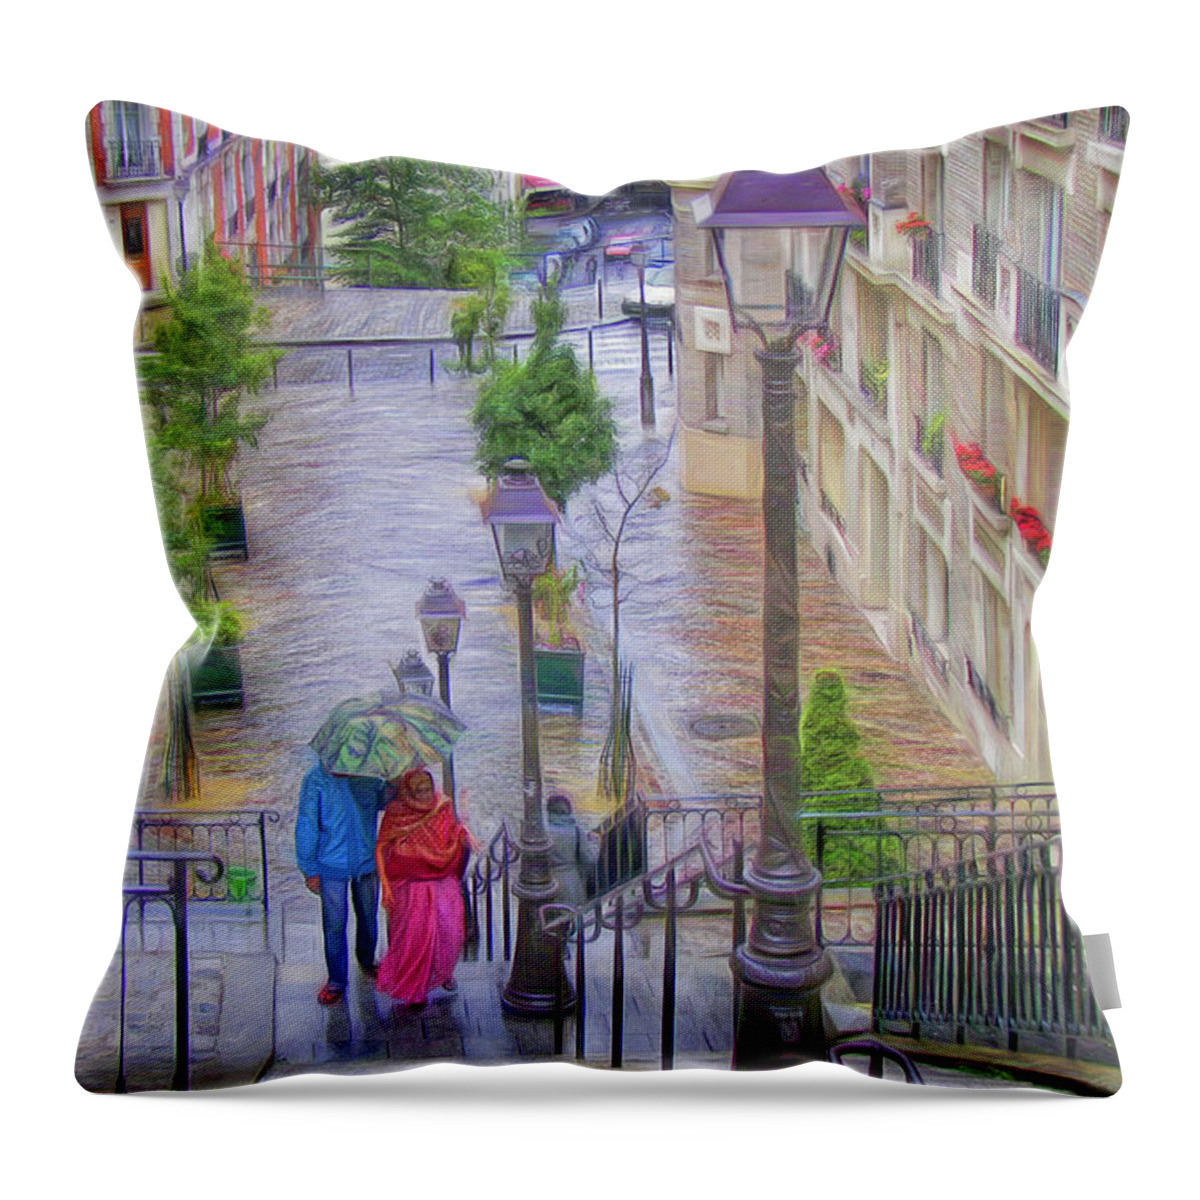 Paris Throw Pillow featuring the photograph Paris sous la Pluie by Nikolyn McDonald